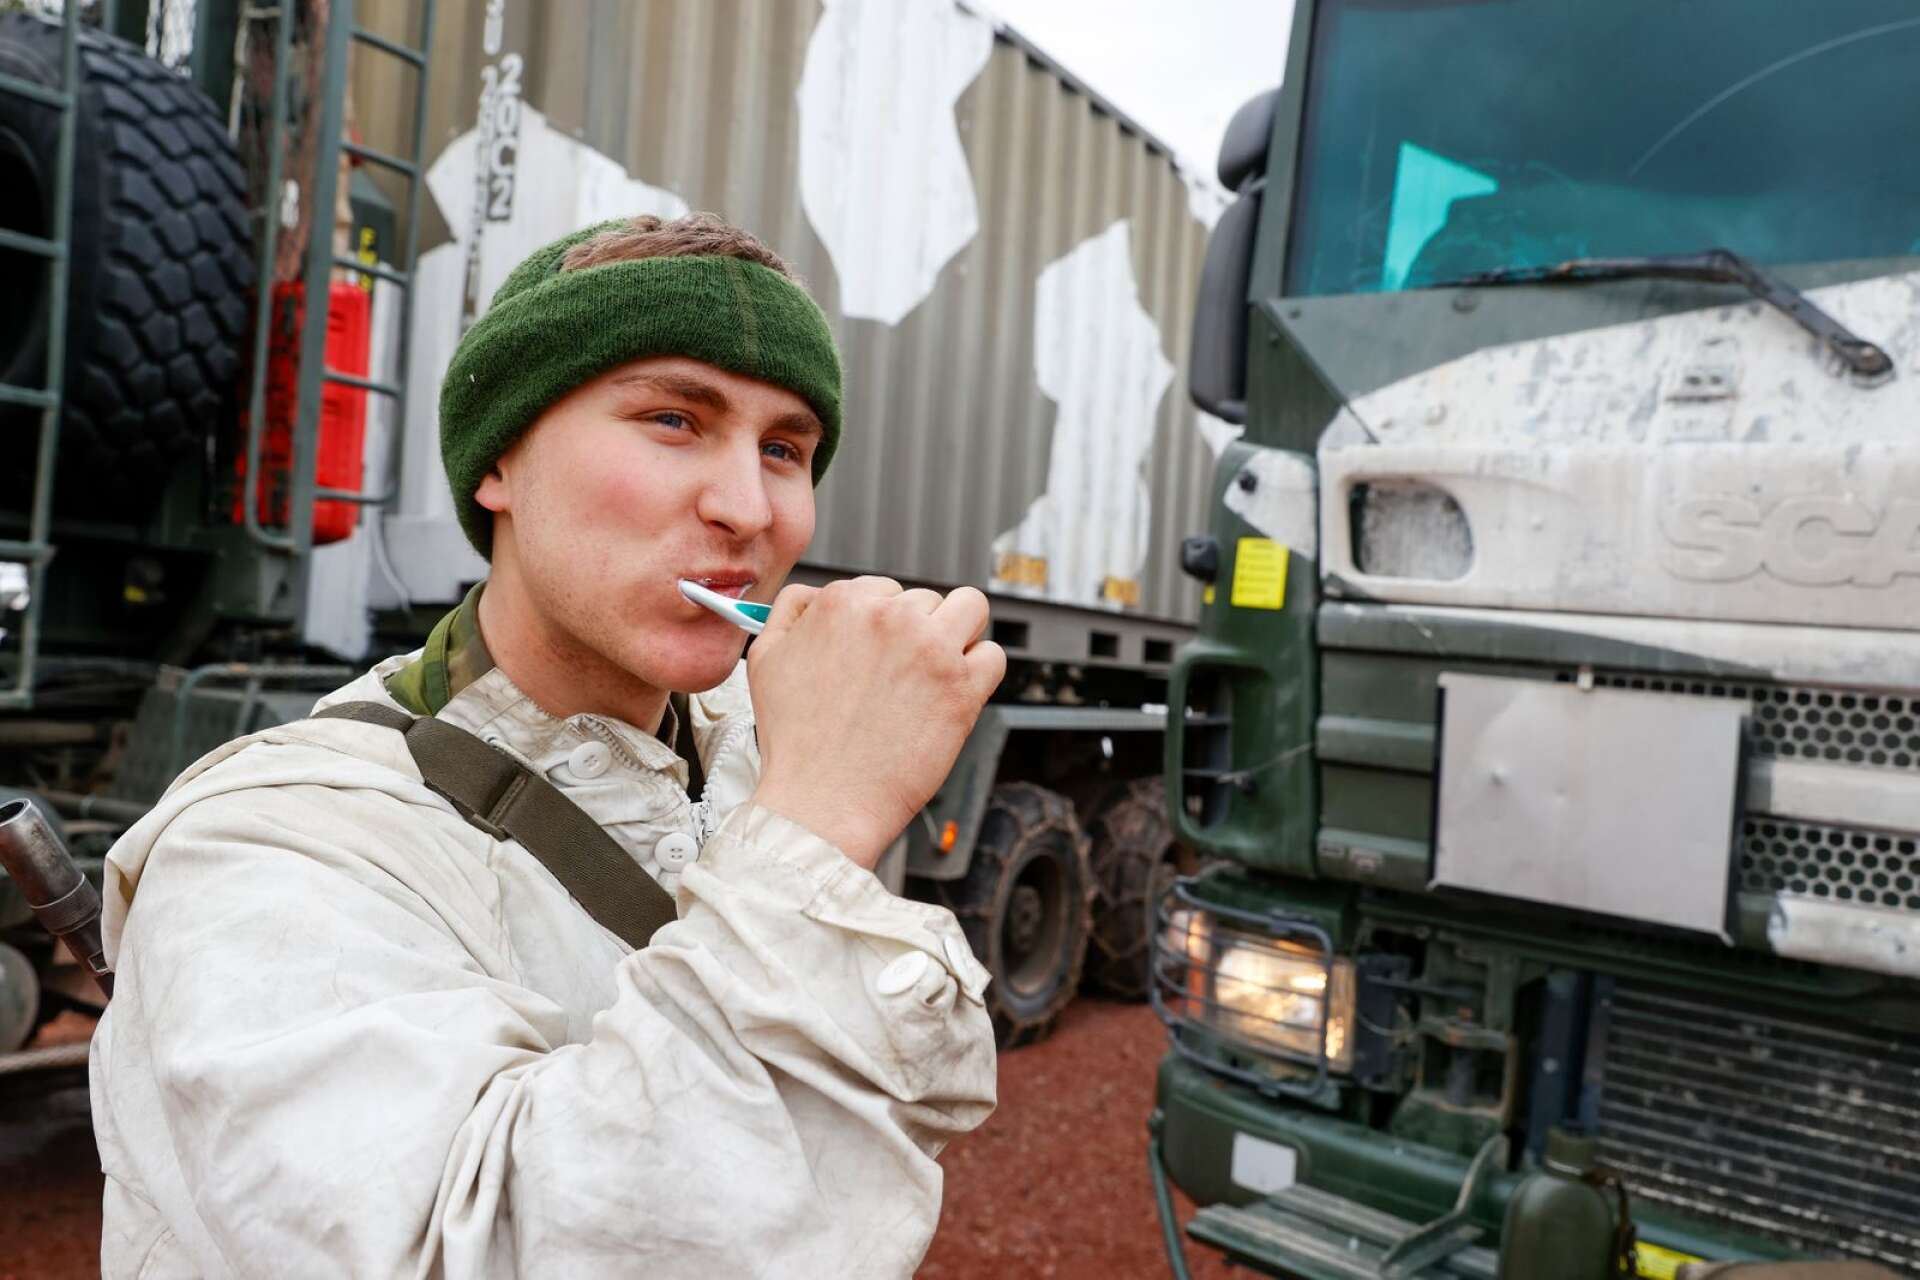 Soldaterna passar på att käka frukost och borsta tänderna i väntan avfärd. Albin Björling, 20, från Jönköping. 